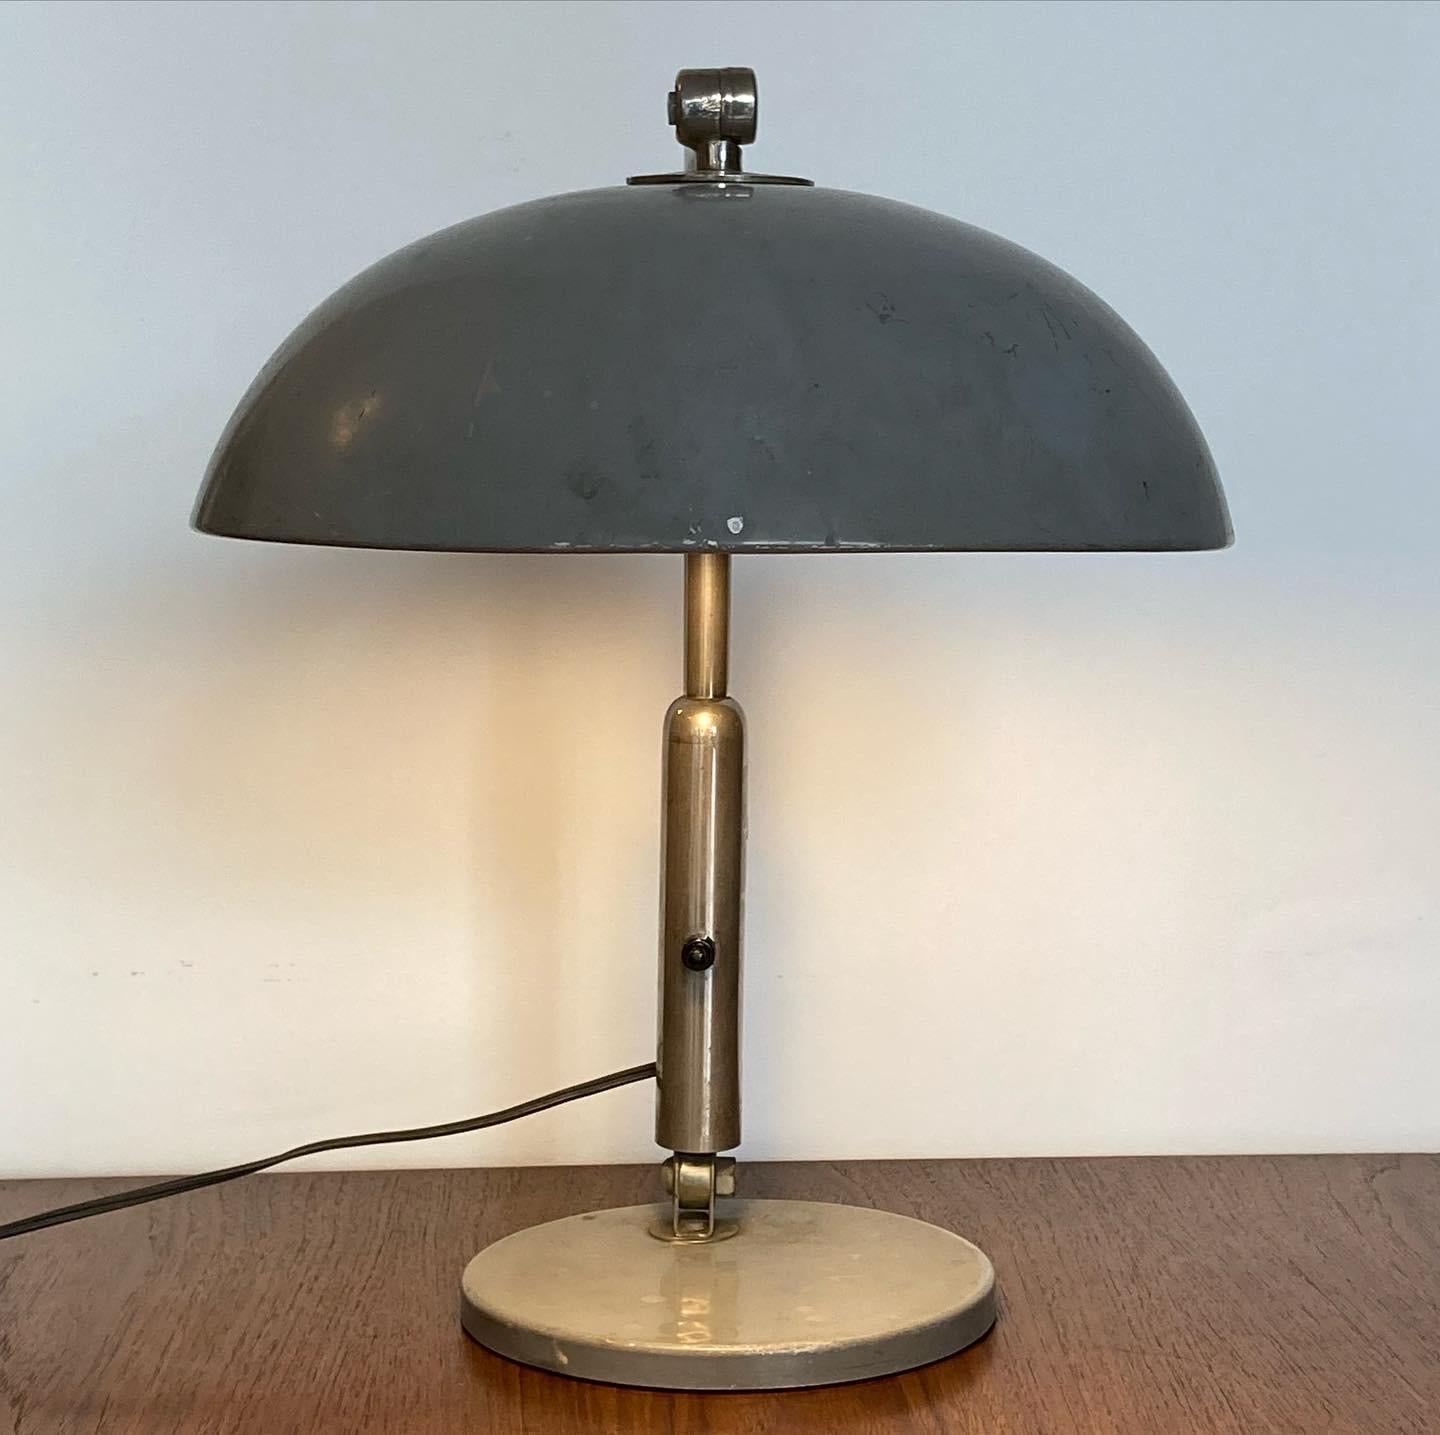 Schöne Schreibtischlampe, 1932 von H. Busquet entworfen und in den 1950er Jahren von Hala Zeist in den Niederlanden hergestellt. Die starke Patina zeigt, dass die Lampe von ihren Vorbesitzern geliebt und benutzt wurde. Sie ist immer noch sehr gut